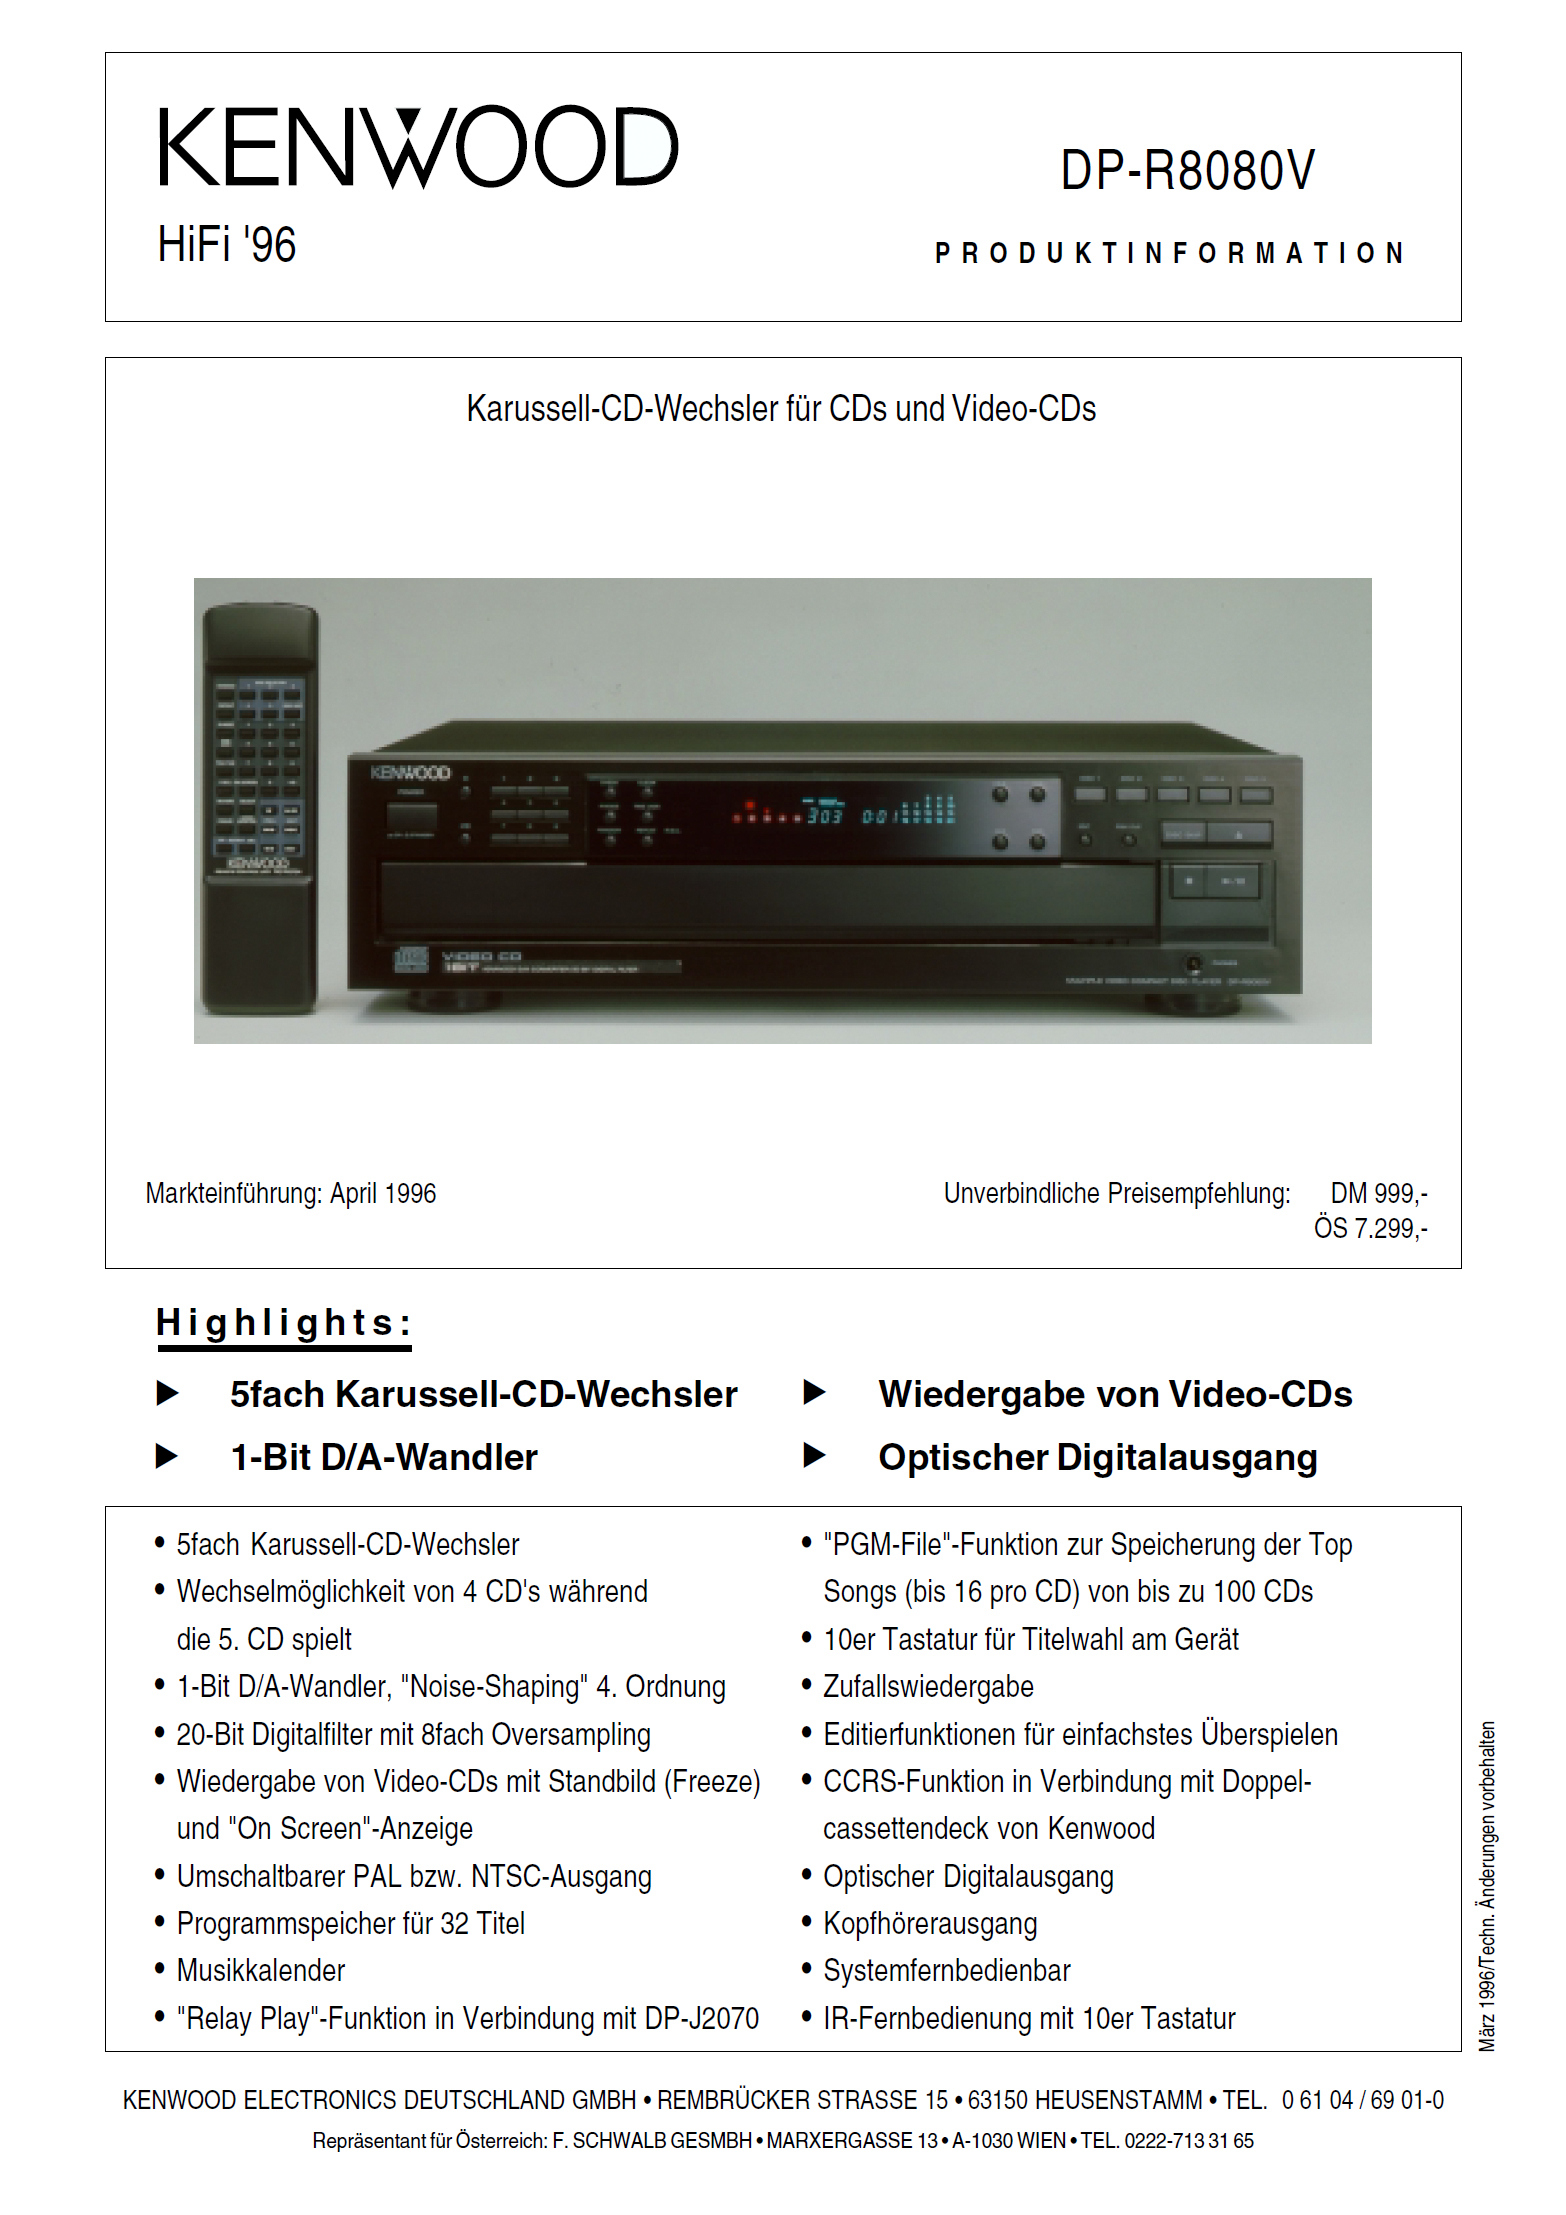 Kenwood DP-R 8080 V-Prospekt-1996.jpg